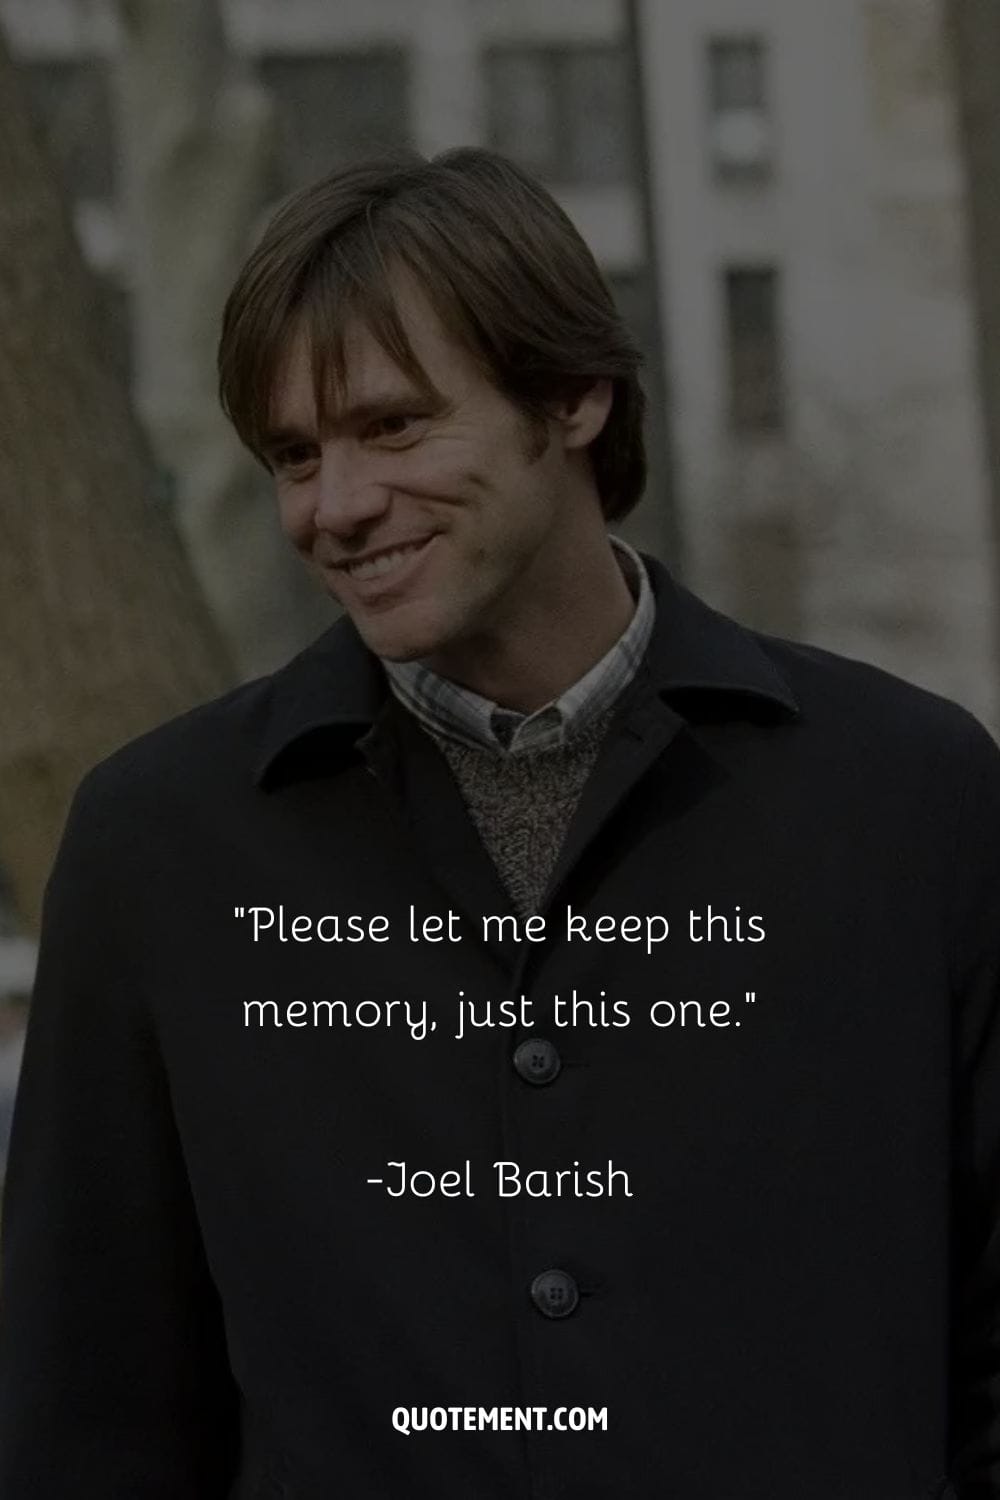 Joel's quiet rebellion against memory erasure